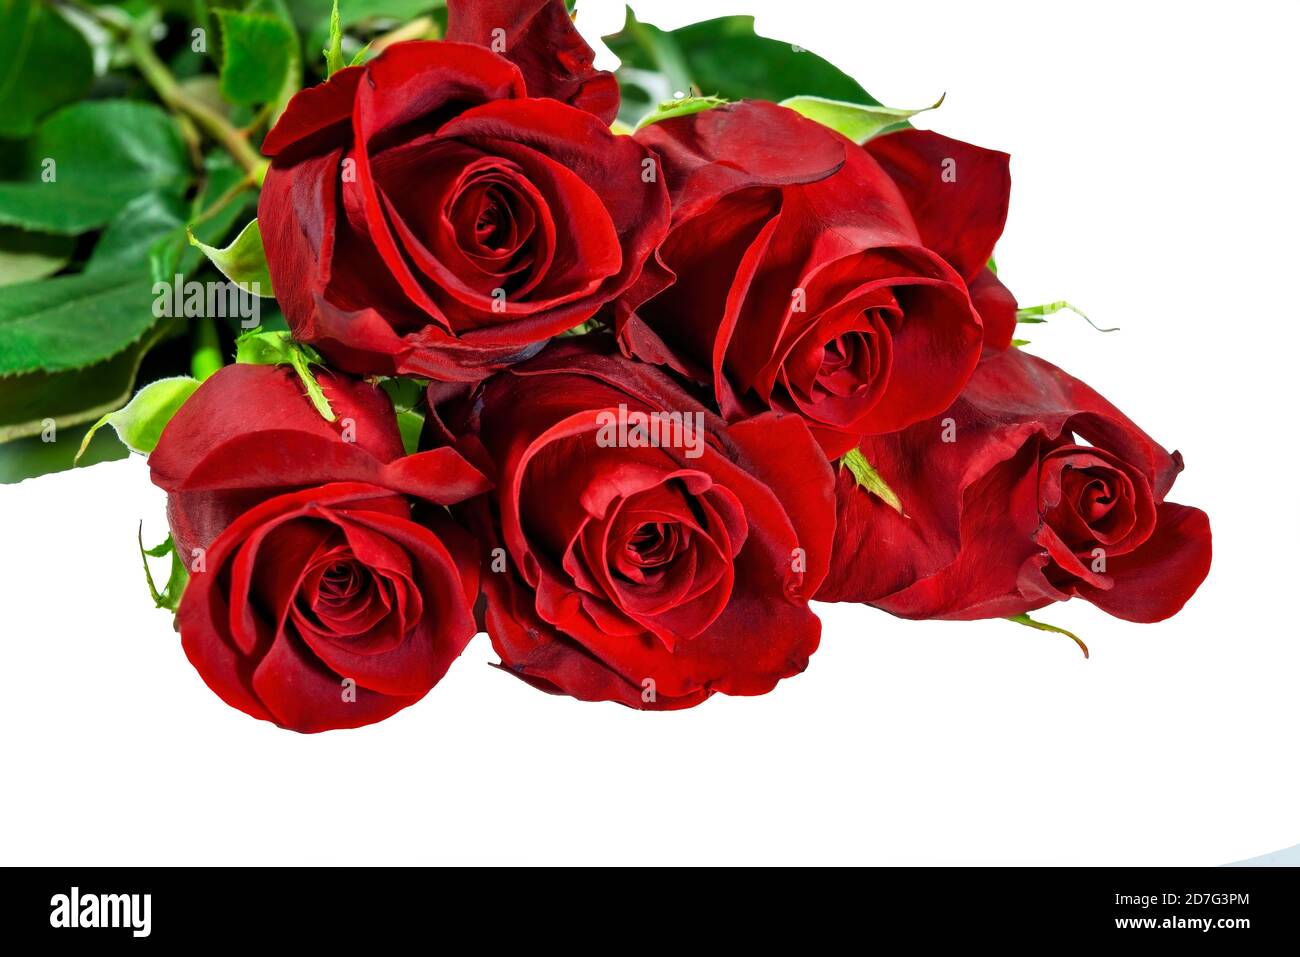 Bó hoa hồng đỏ rực chính là cách tuyệt vời nhất để tỏ tình hay dành tặng cho người mình yêu thương. Khám phá thêm về vẻ đẹp đầy cuốn hút của những bó hoa hồng này trong các hình ảnh.